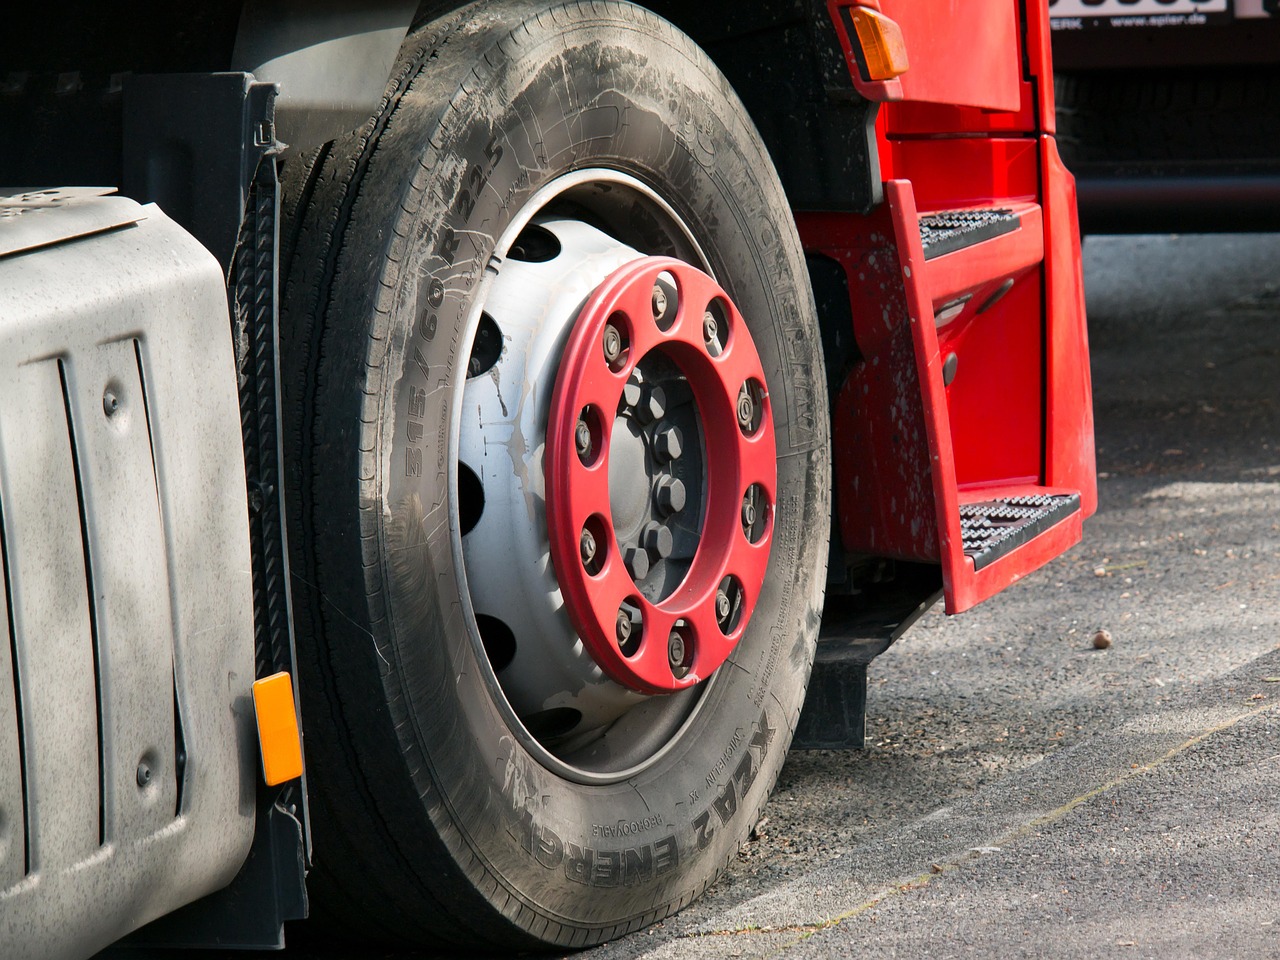 Controale privind gabaritul camioanelor care circulă pe drumurile județene din Timiș